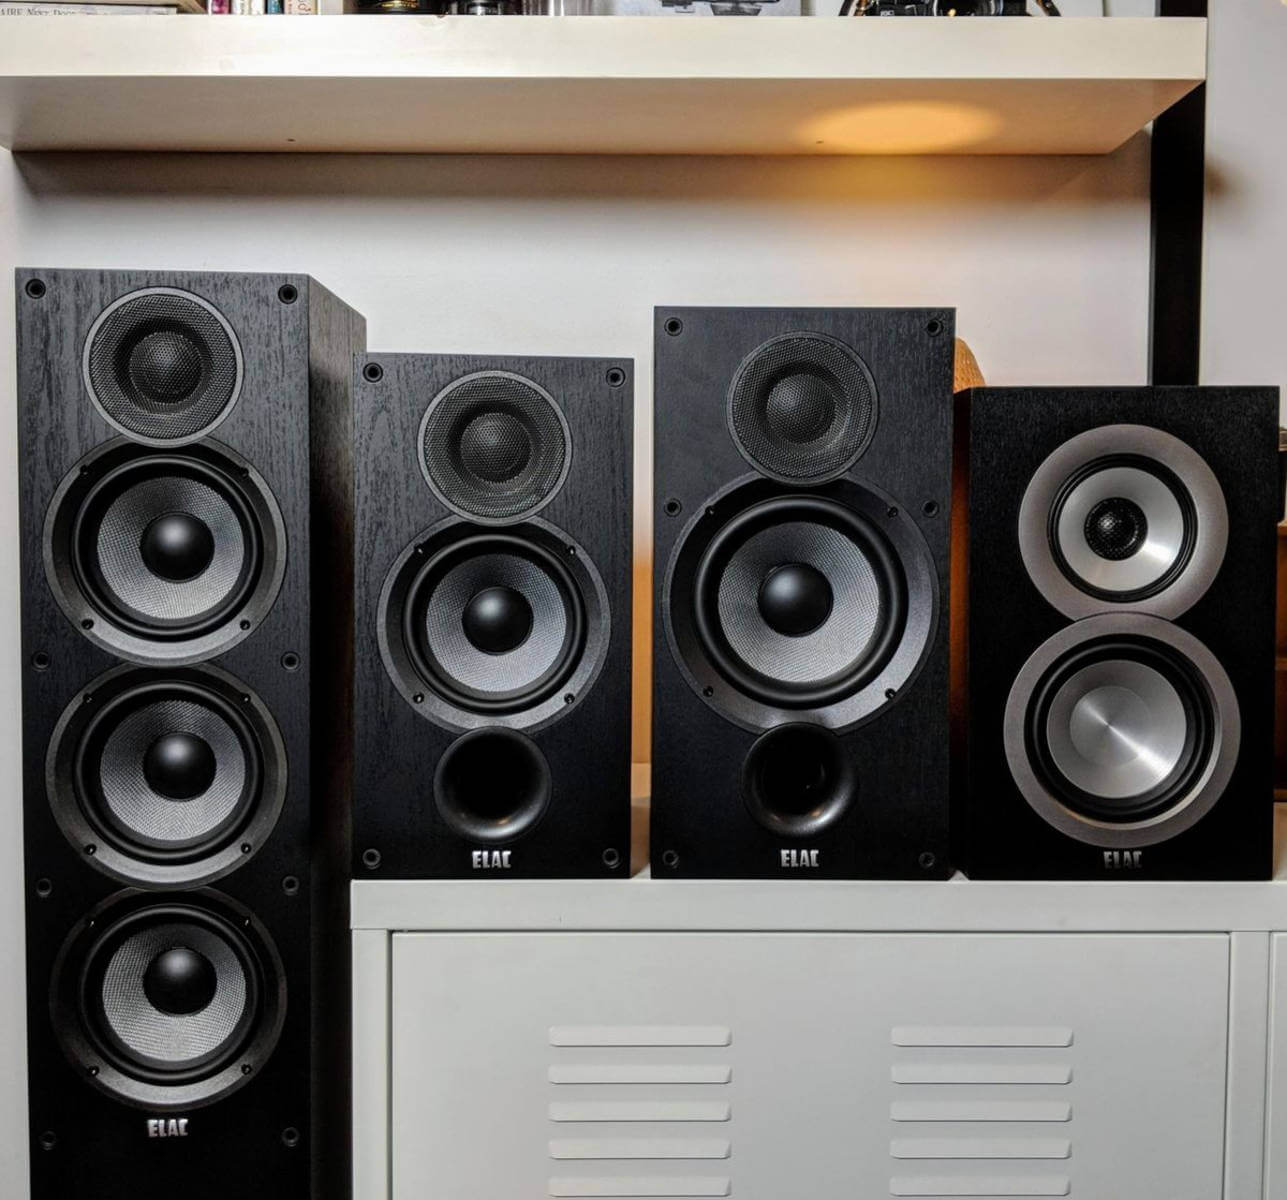 Black friday Elac speakers - Elac speakers